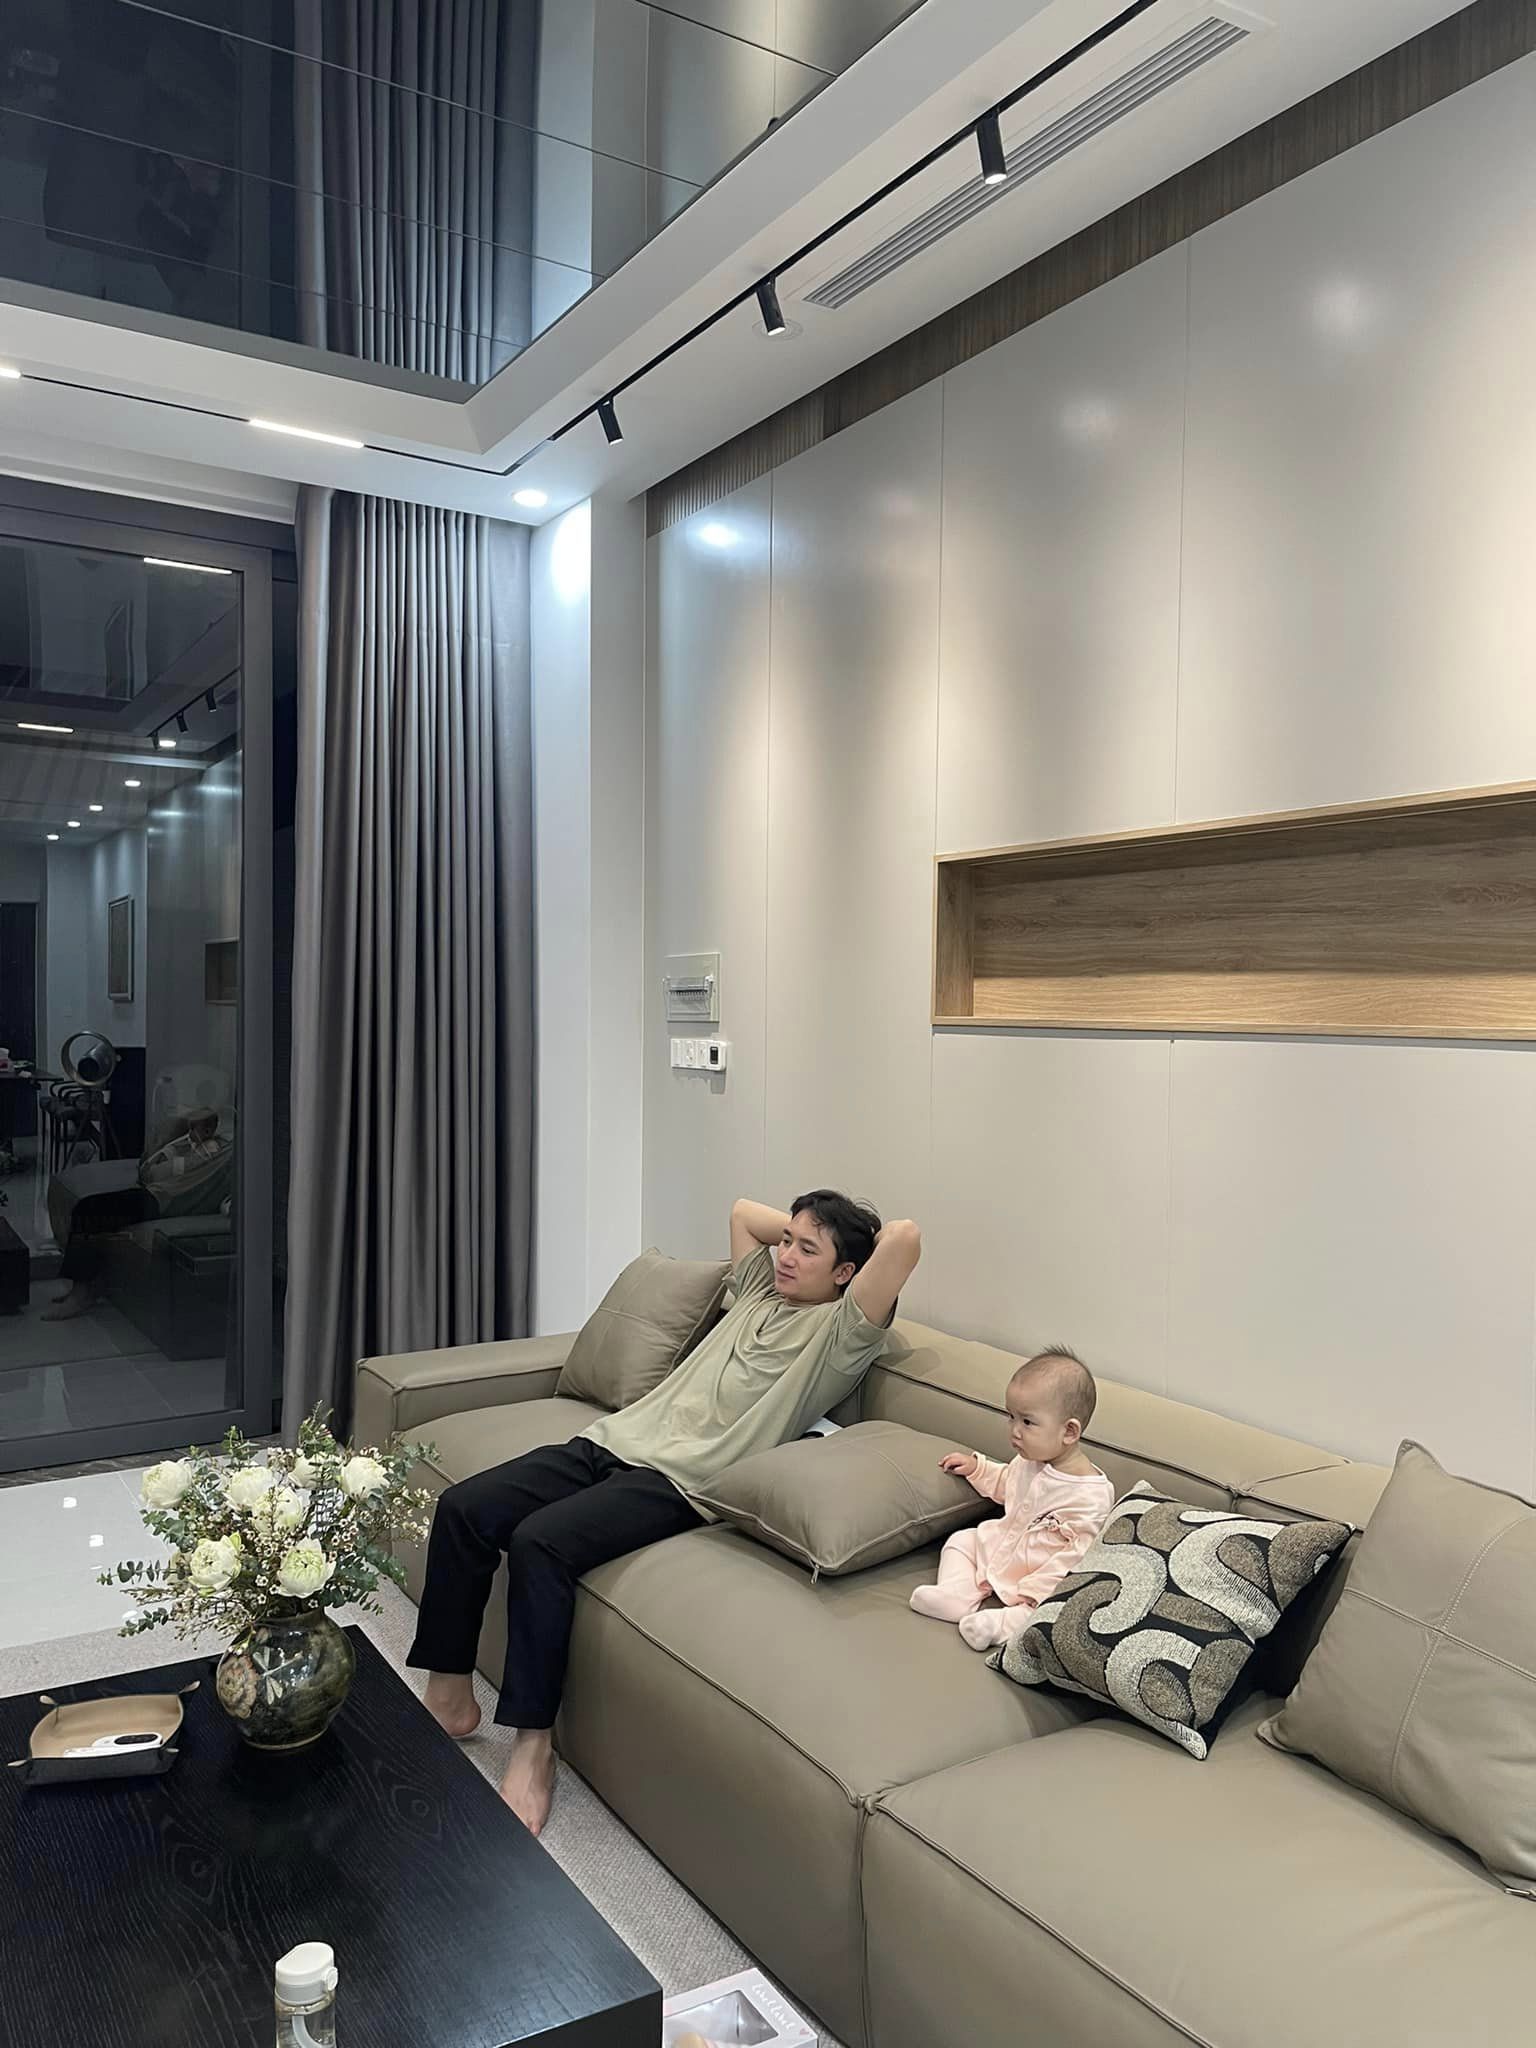 Vợ chồng Phan Mạnh Quỳnh khoe căn nhà 3 tầng mới xây: Tự tay chọn từng viên gạch, không gian khang trang xịn xò